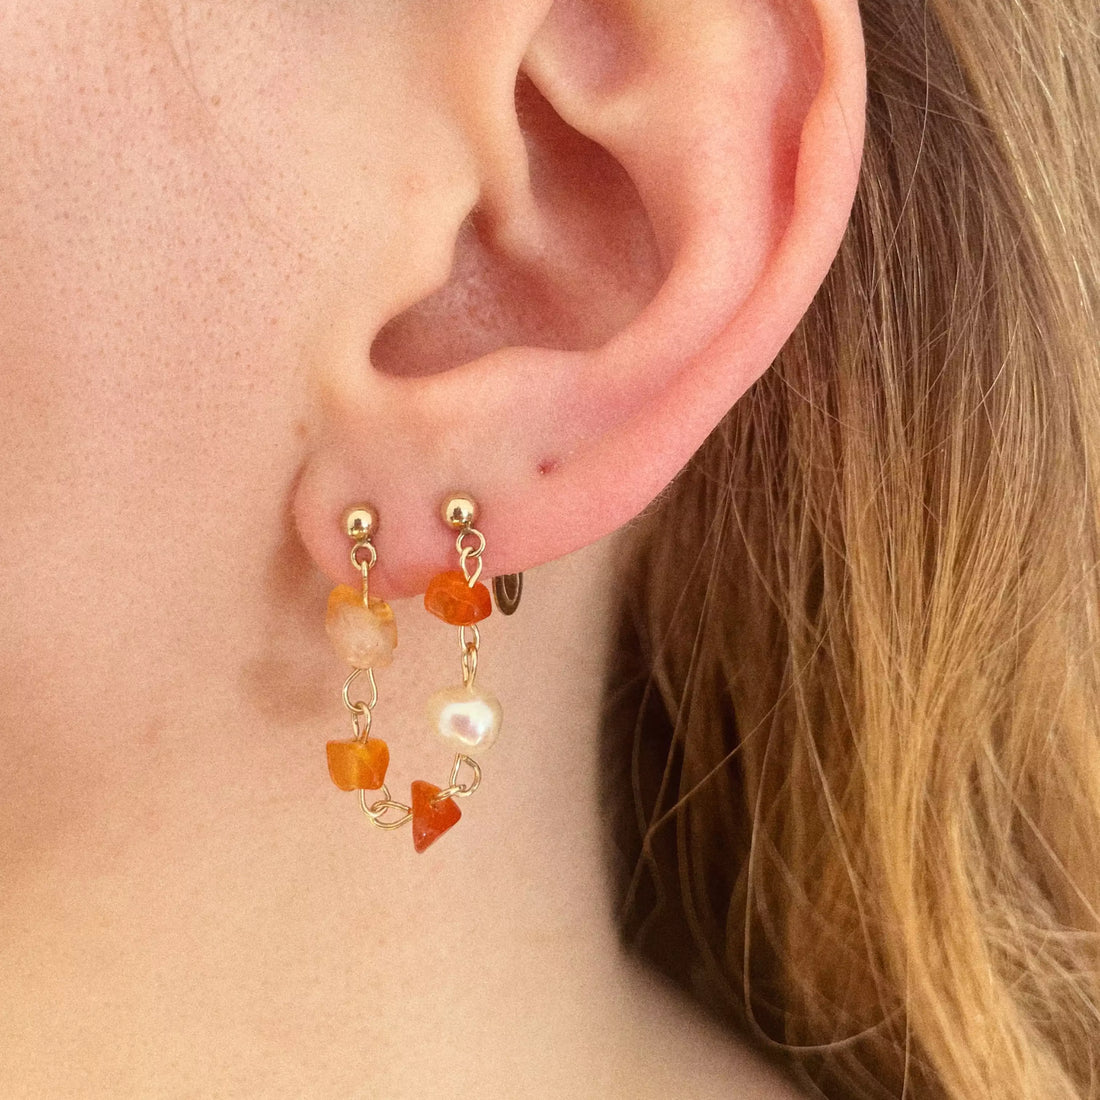 cette boucle d'oreille est composée de plusieurs cornalines avec differentes teintes d'orange, et une perle d'eau douce. Lalliance de ces éléments forme une chaîne qui fait le lien entre les deux trous du lobe.